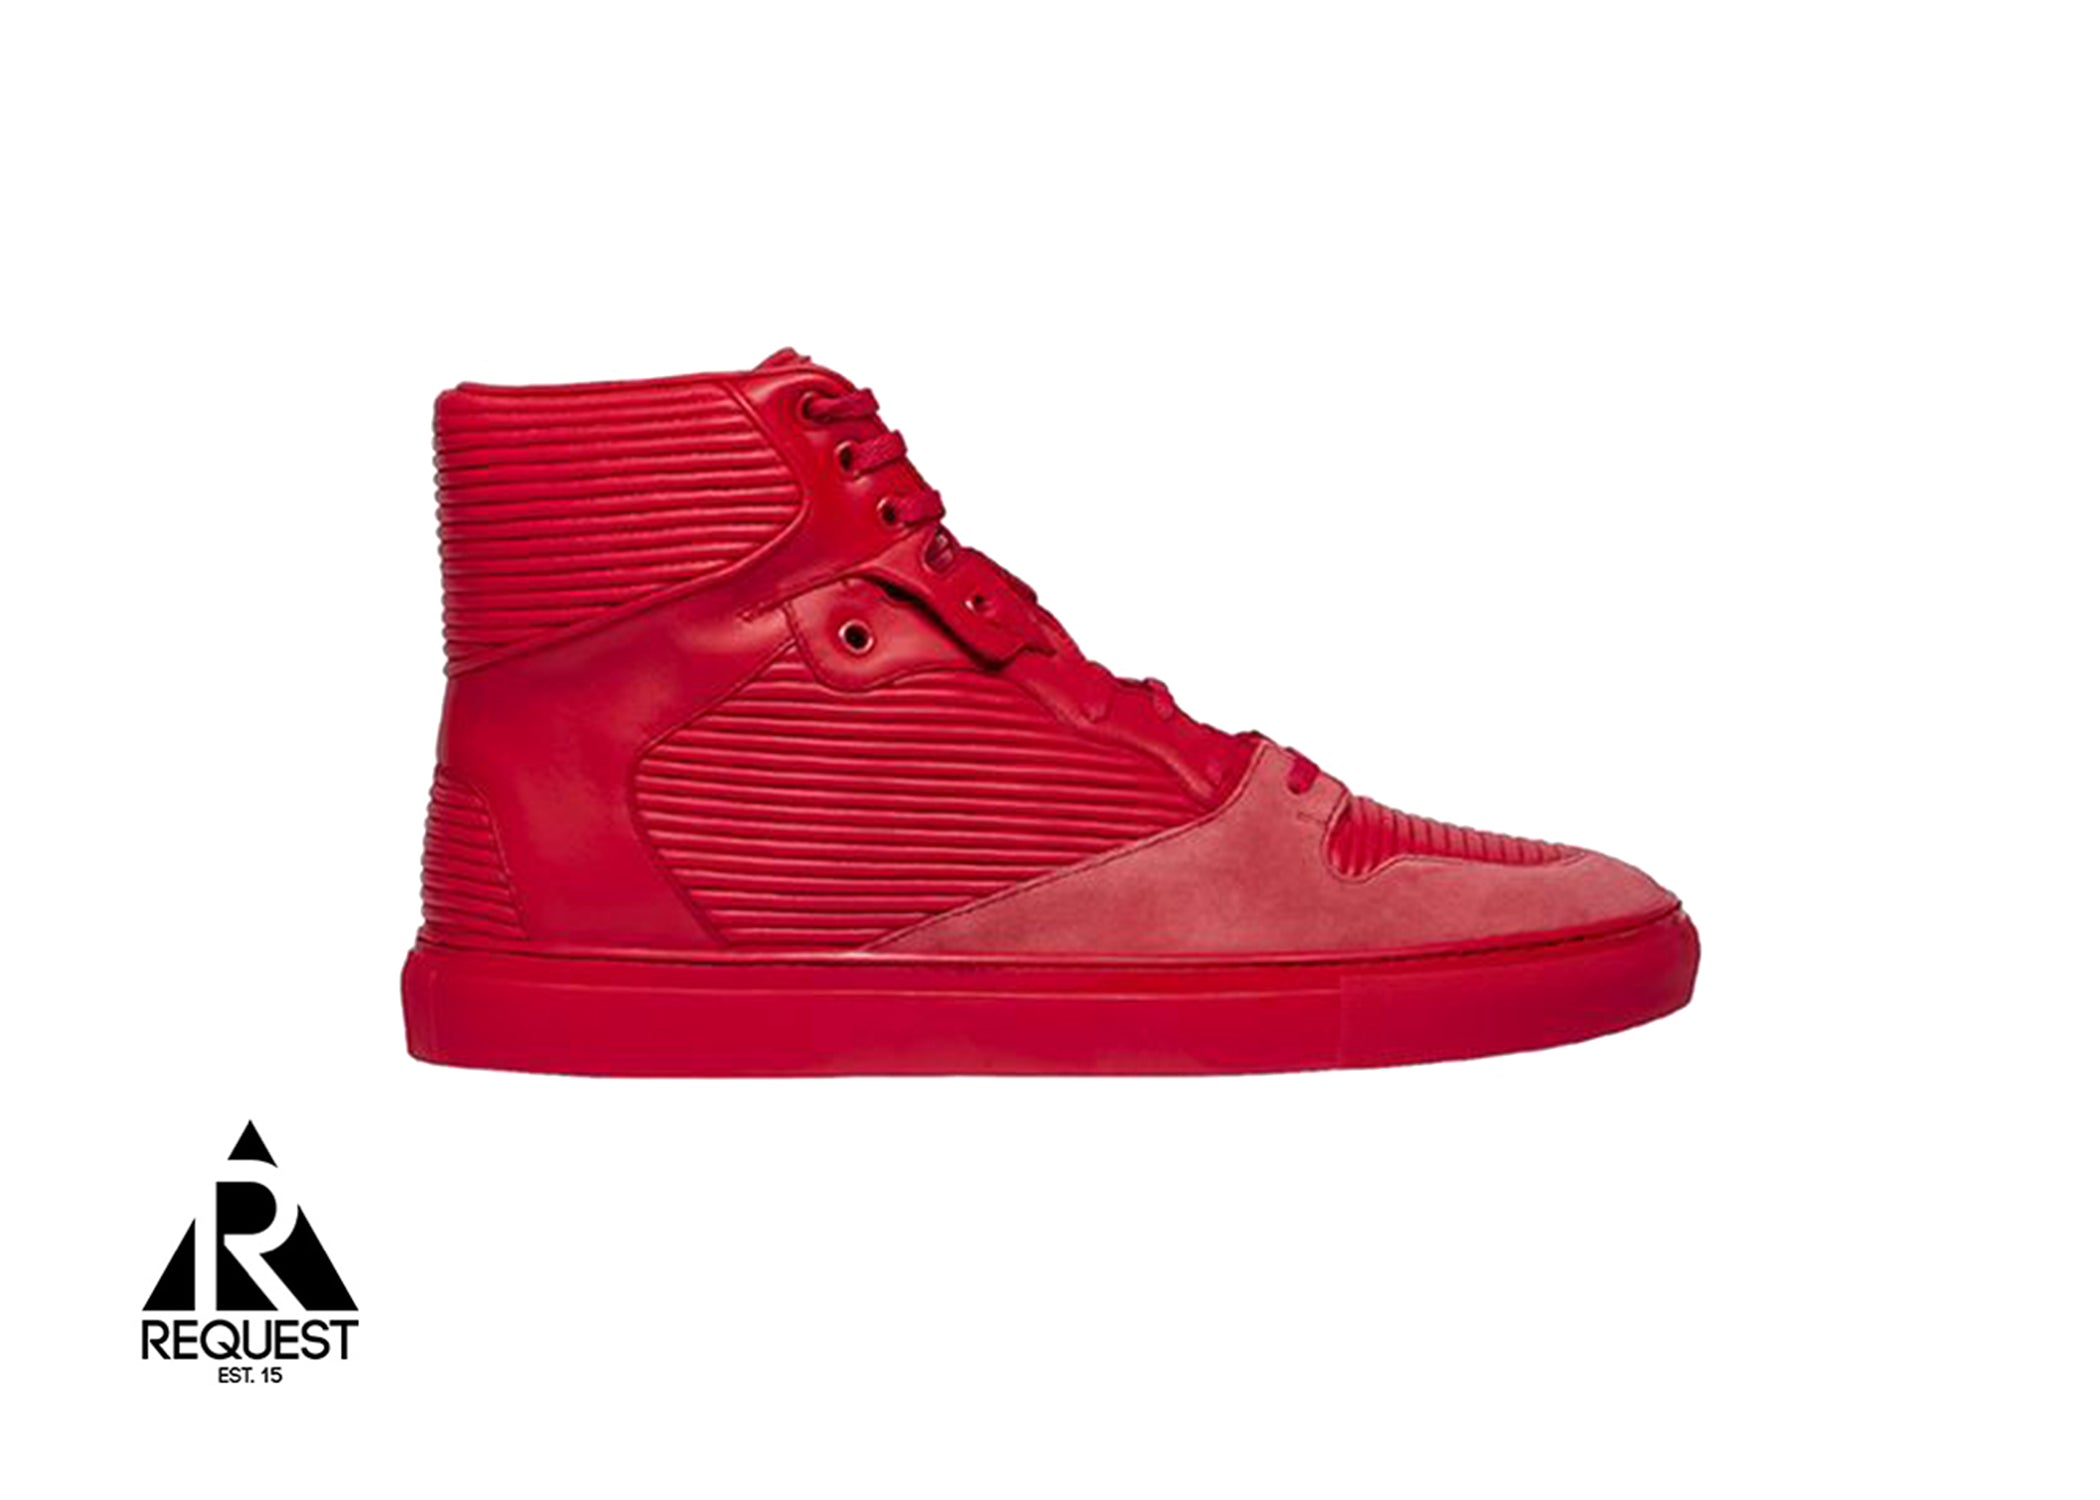 Balenciaga Cotes Monochrome “Red”